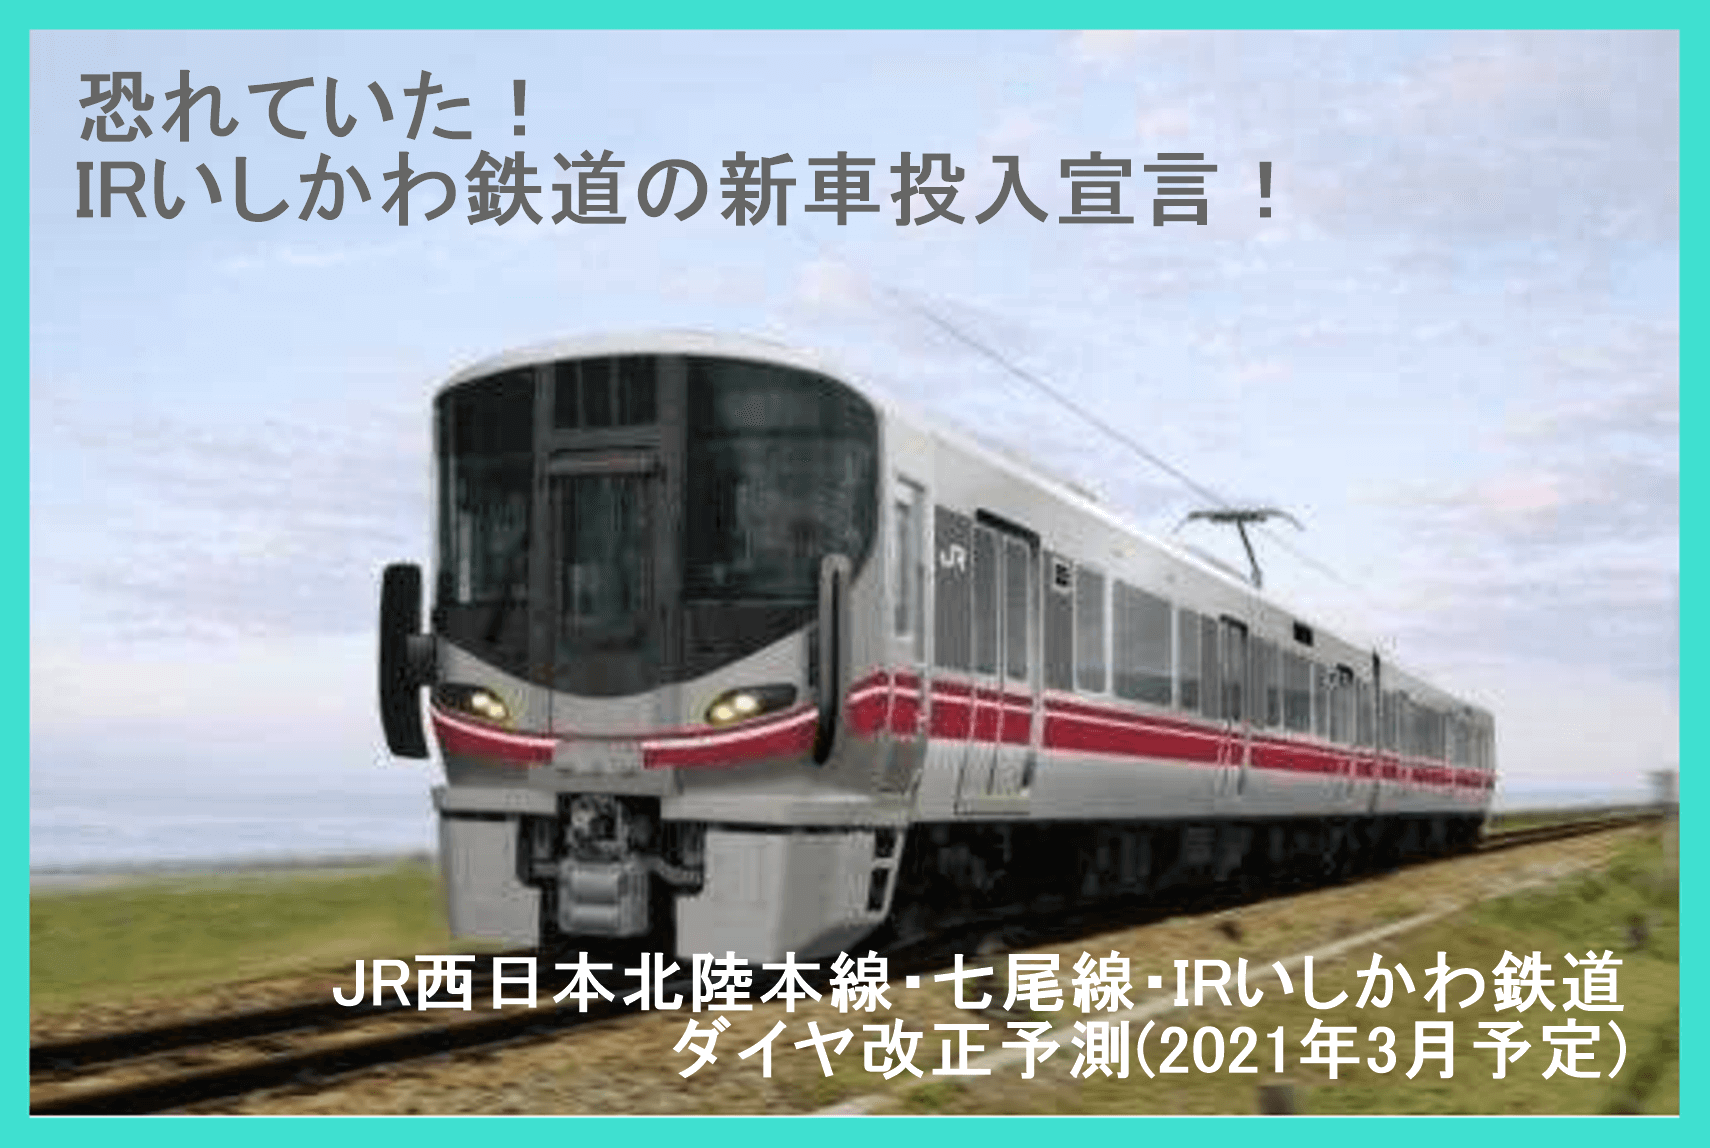 恐れていた！IRいしかわ鉄道の新車投入宣言！　JR西日本北陸本線・七尾線・IRいしかわ鉄道ダイヤ改正予測(2021年3月予定)